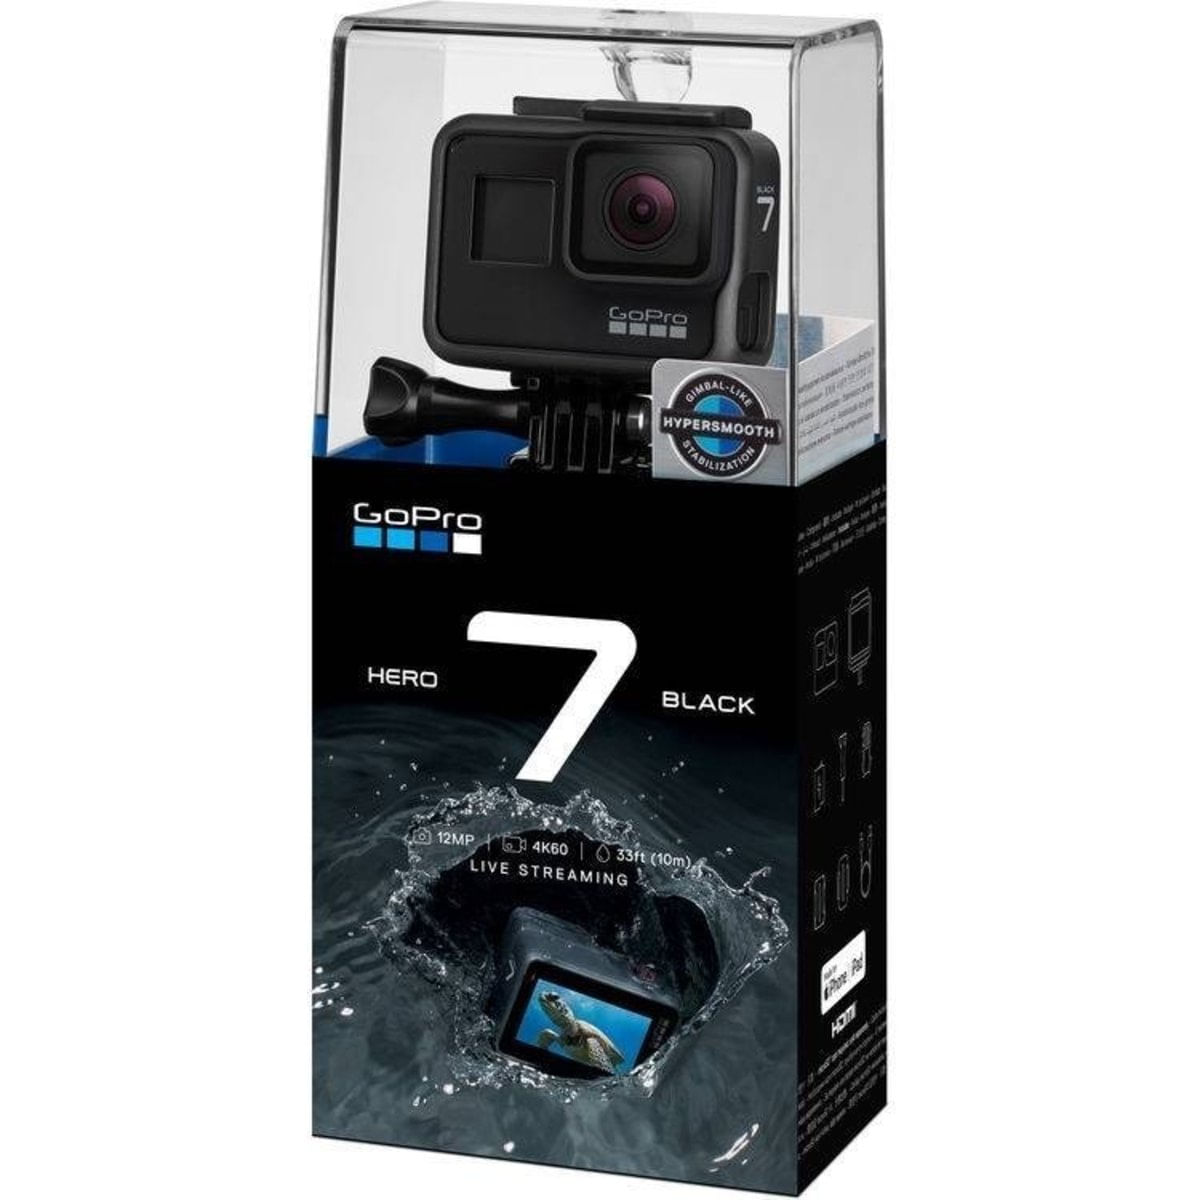 アウトレット価格で提供 GoPro HERO BLACK当時最上位モデル 家電・スマホ・カメラ